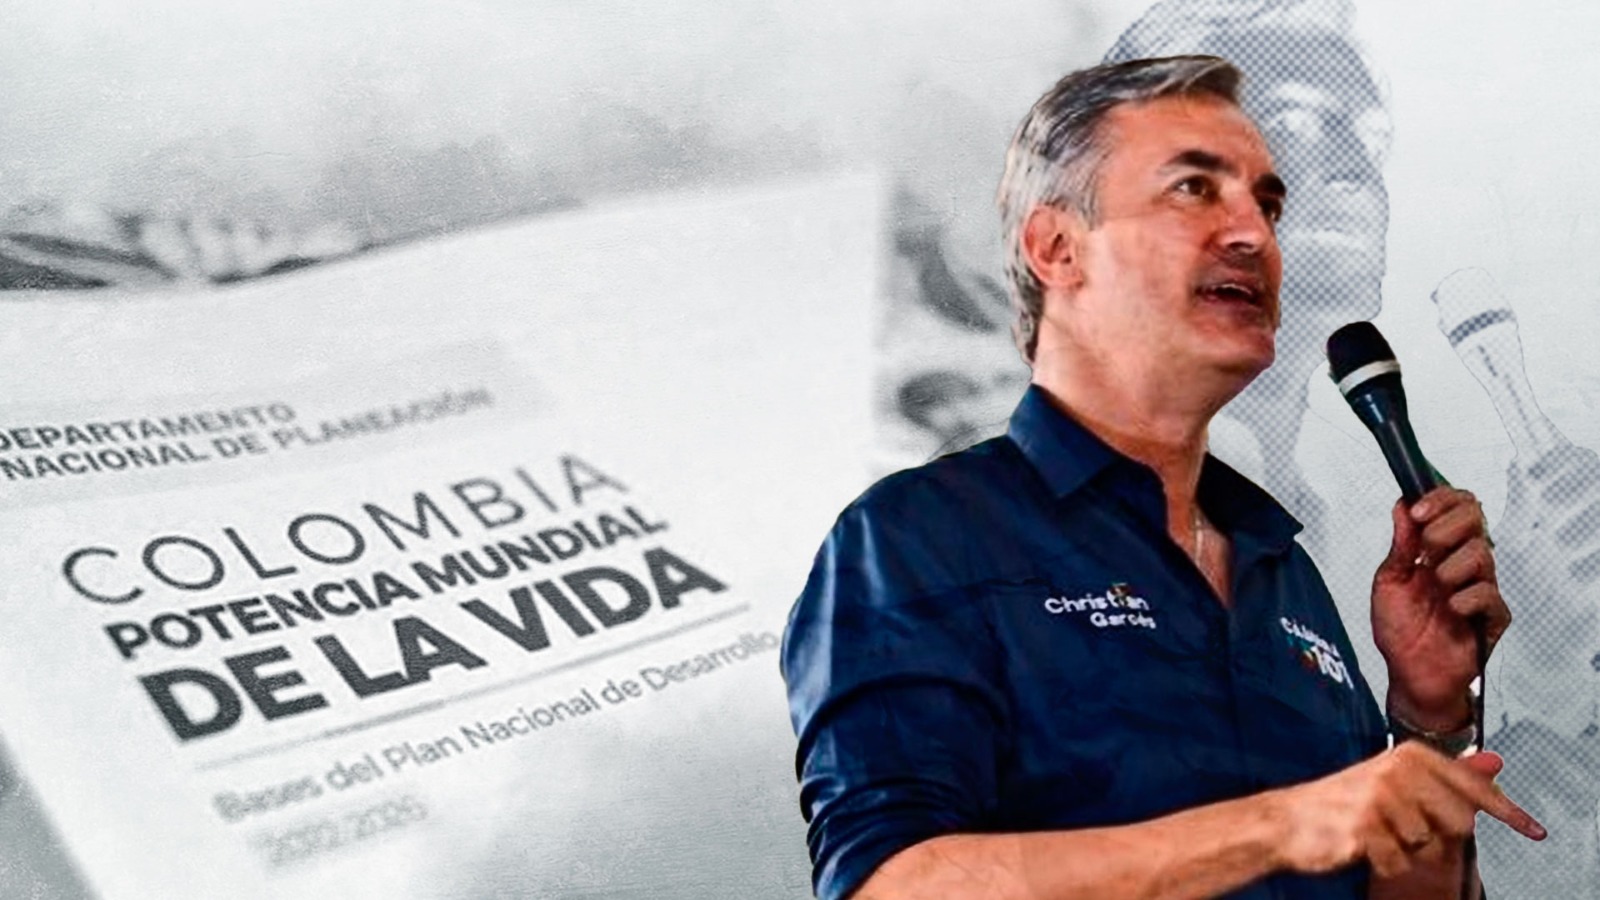 Representante Christian Garcés se refirió a las falencias del PND del Gobierno Petro. Jesús Áviles - Infobae